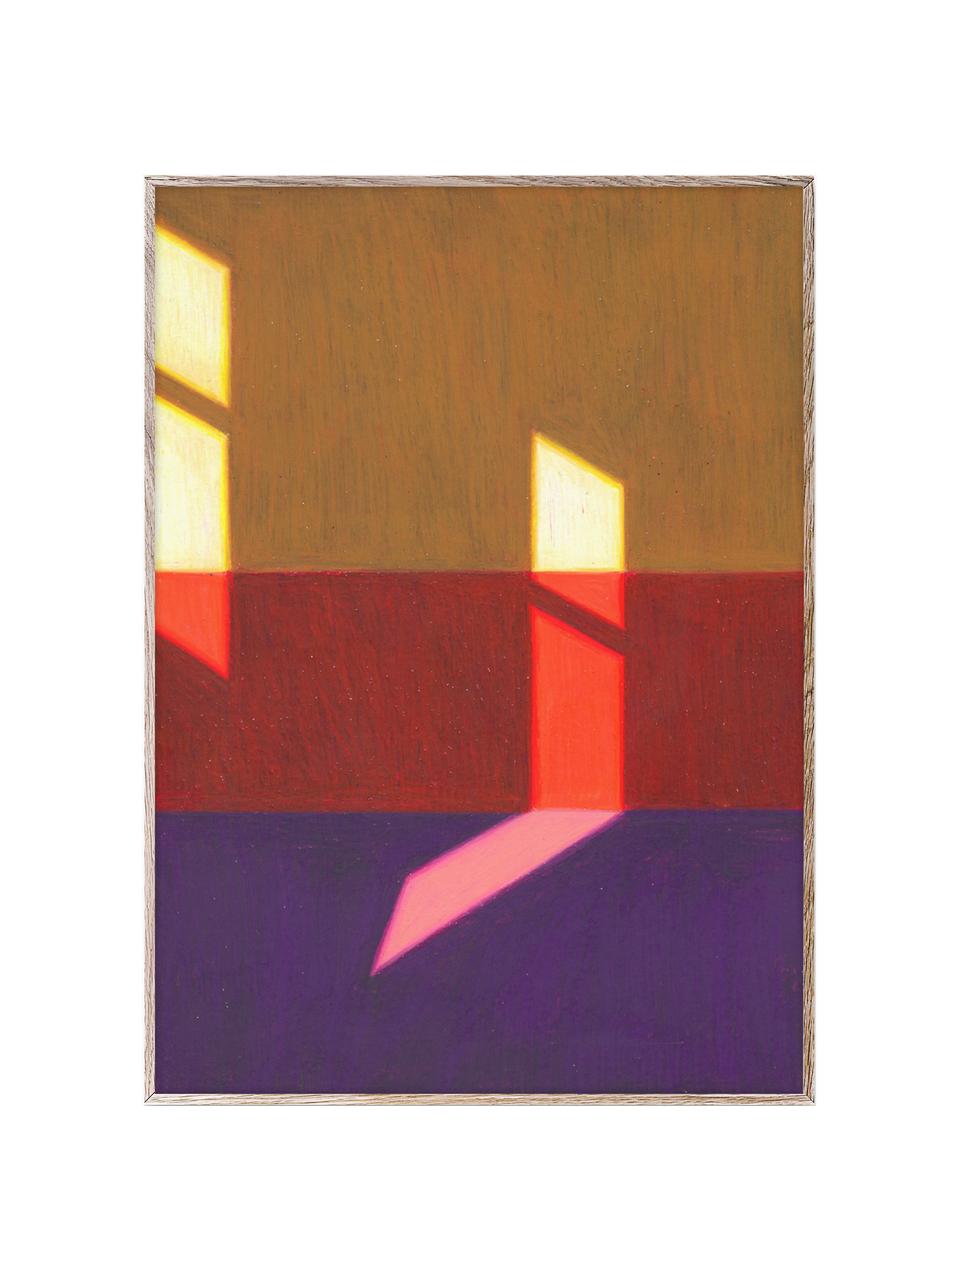 Poster Les Vacances 02, 210 g de papier mat de la marque Hahnemühle, impression numérique avec 10 couleurs résistantes aux UV, Lilas, rouge, jaune, larg. 30 x haut. 40 cm